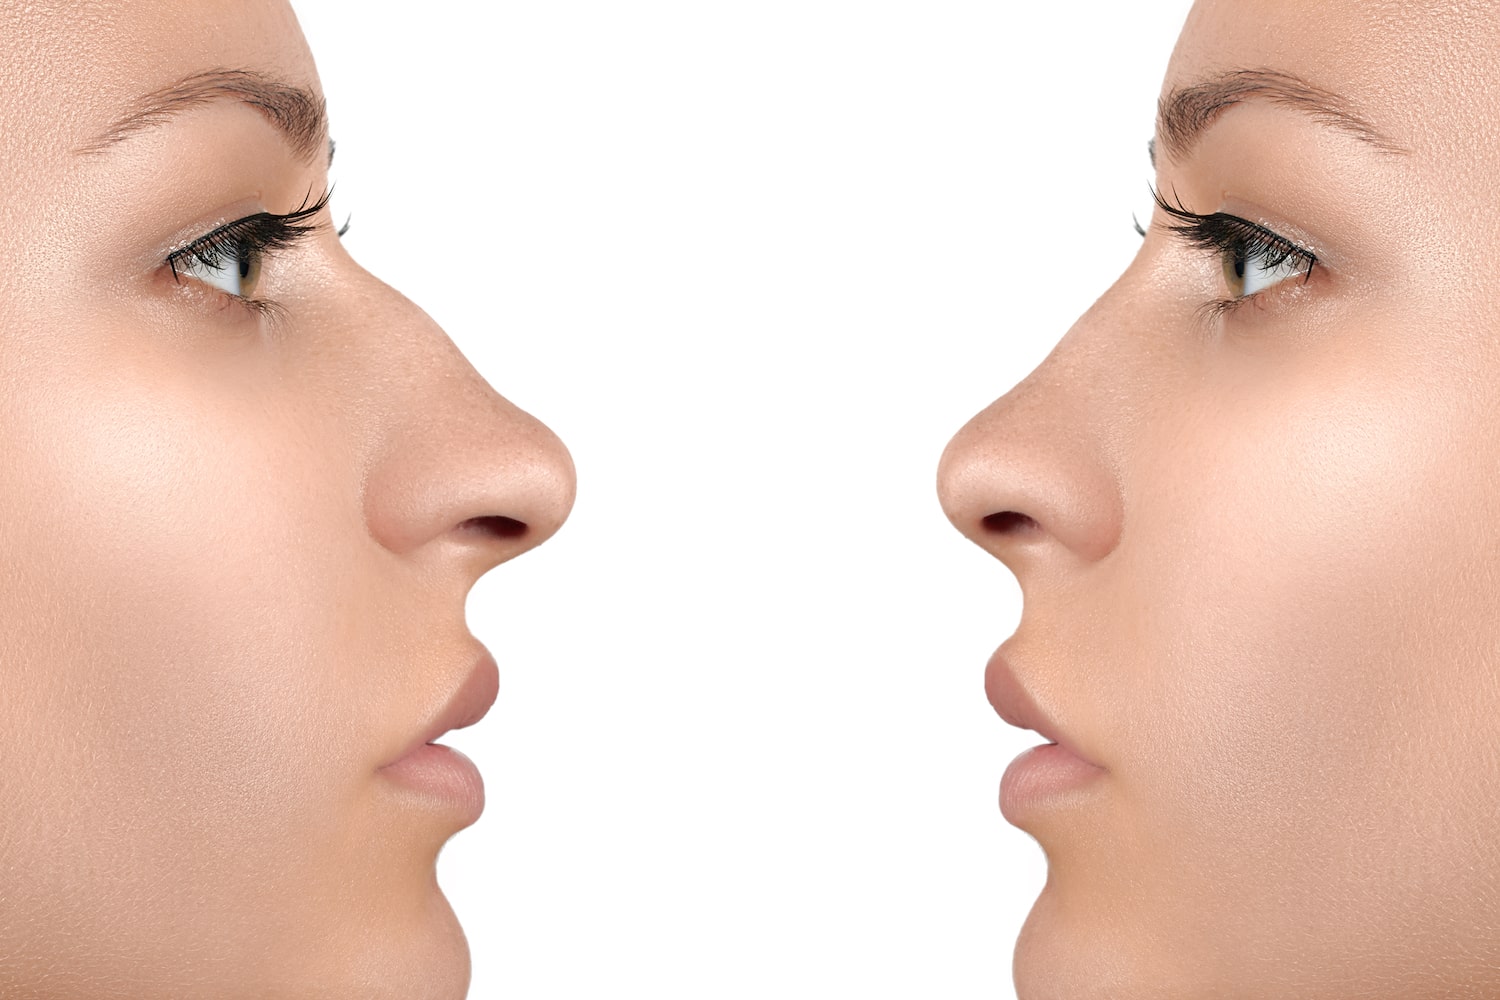 Ринопластика седловидного носа